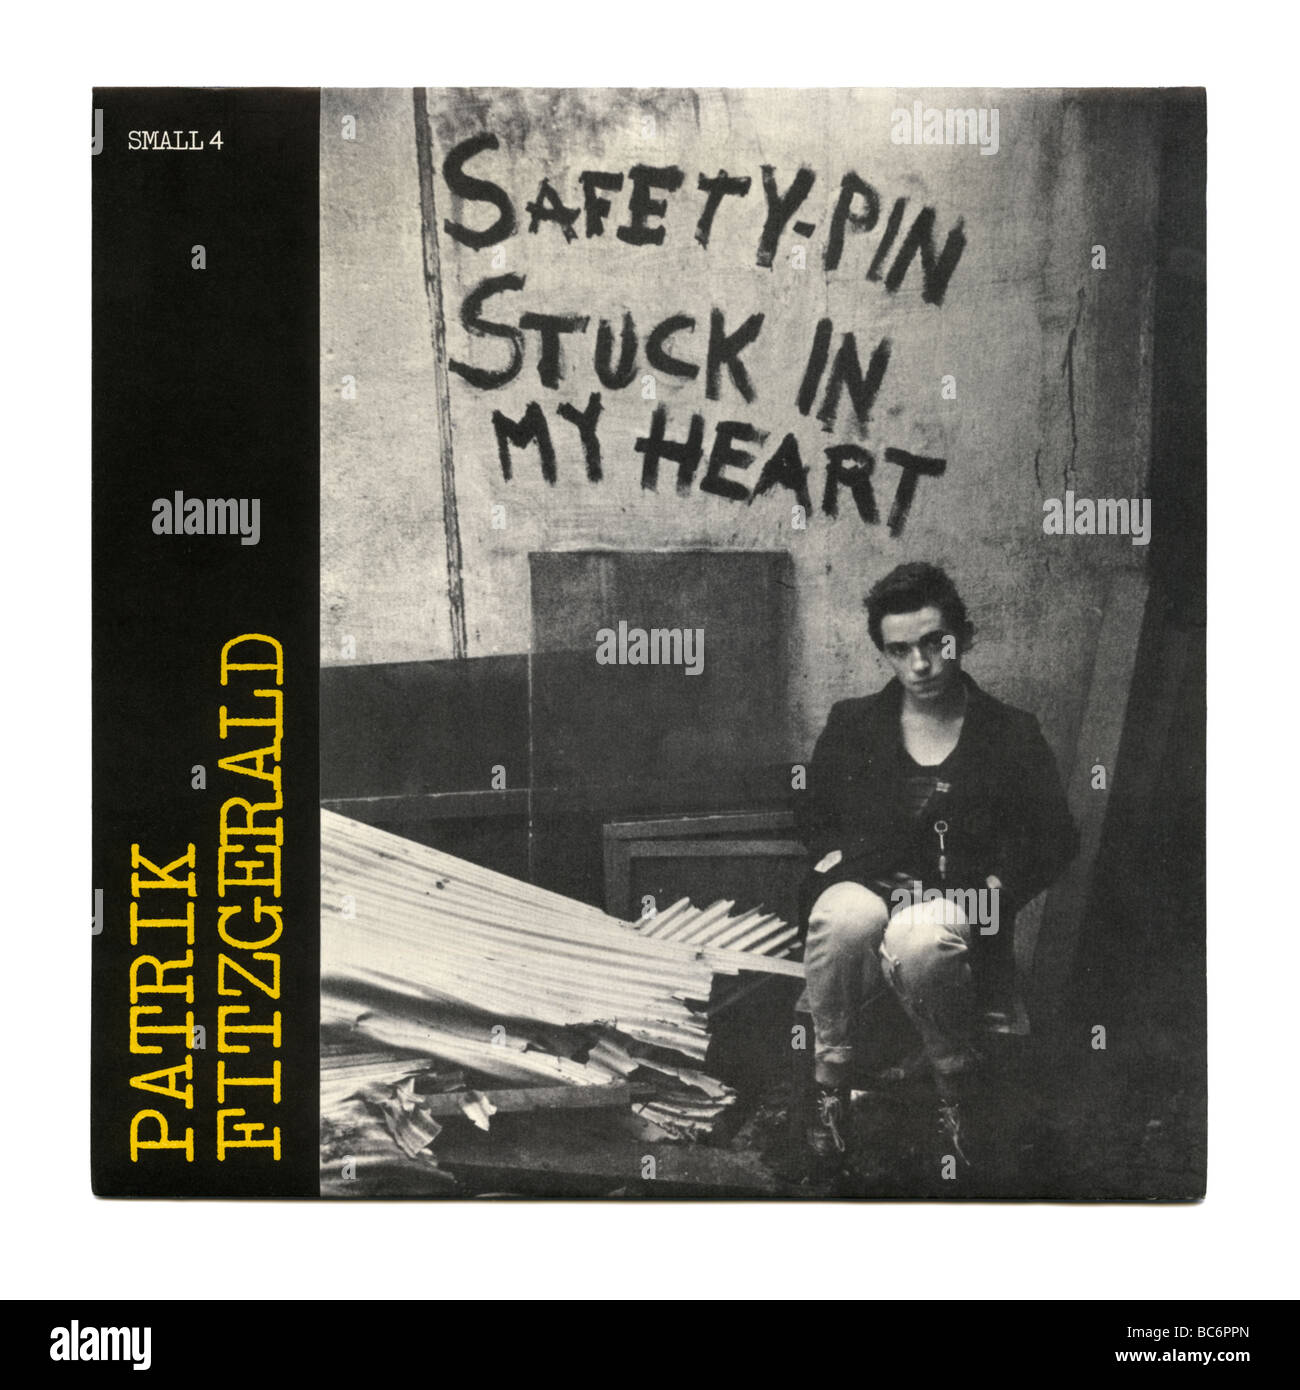 Safety Pin Stuck in my Heart' EP par Patrik Fitzgerald, un punk rock record a été publié la première fois en 1977 Banque D'Images